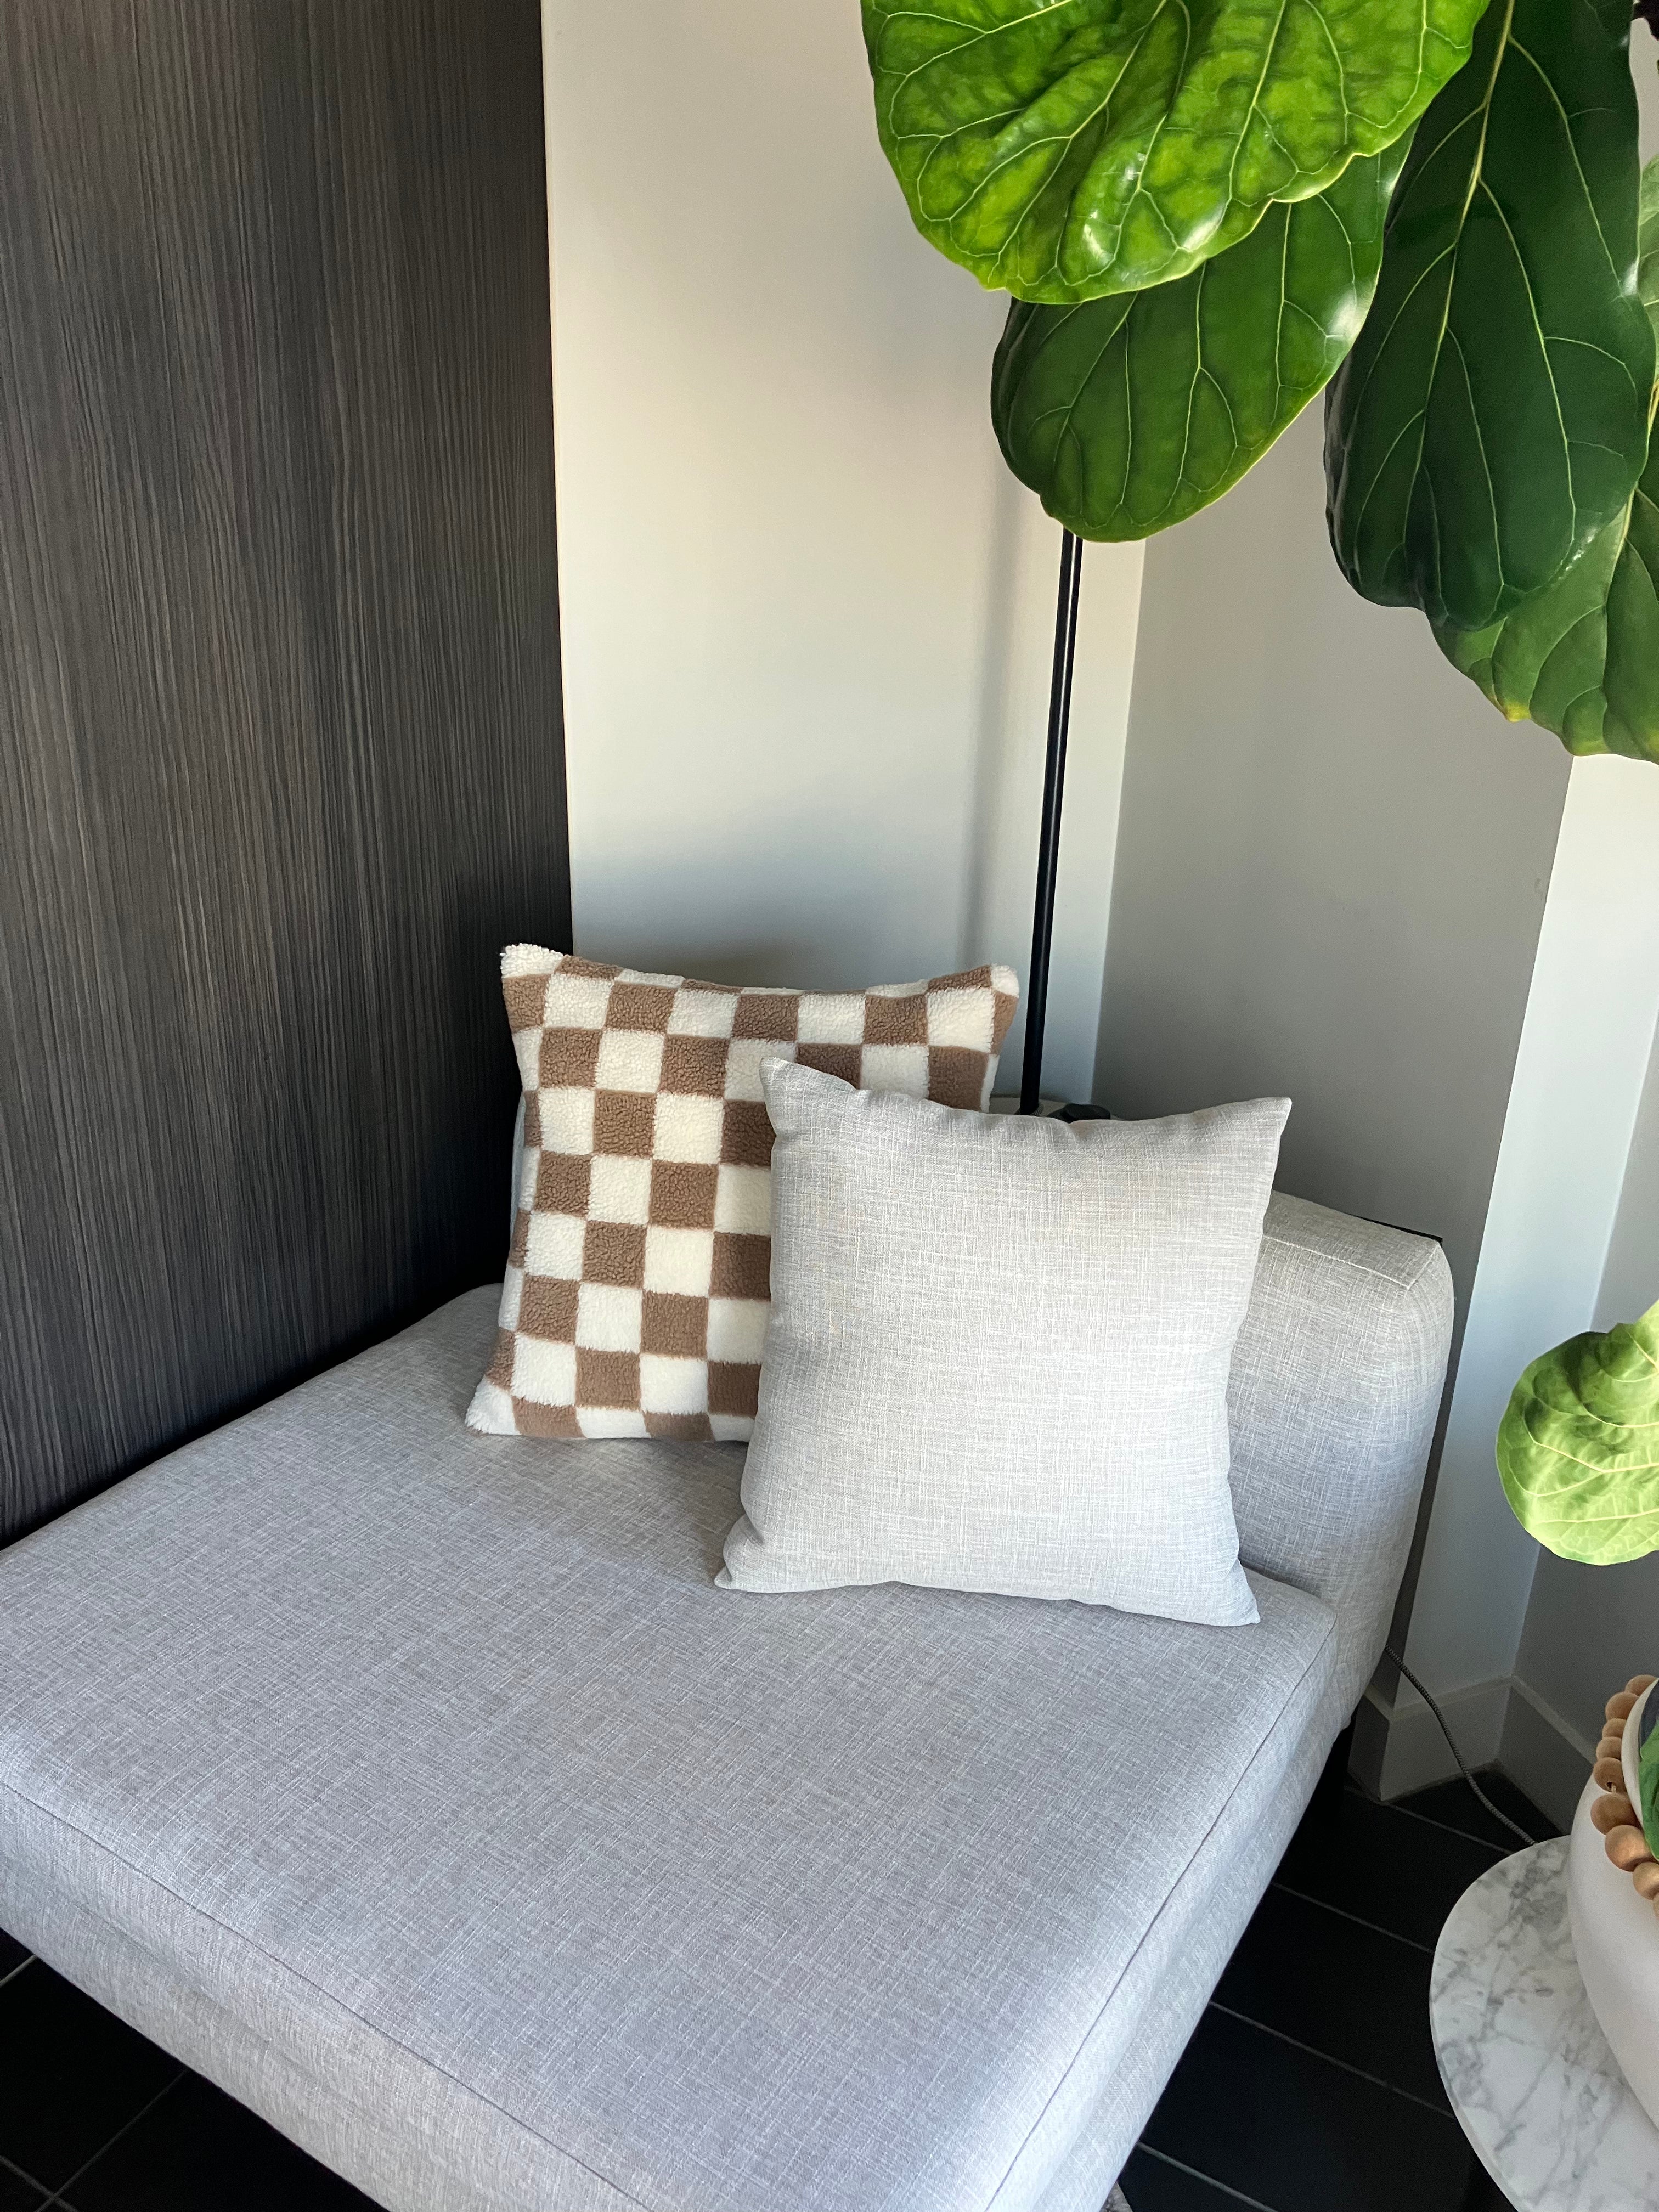 Checkered Cushion